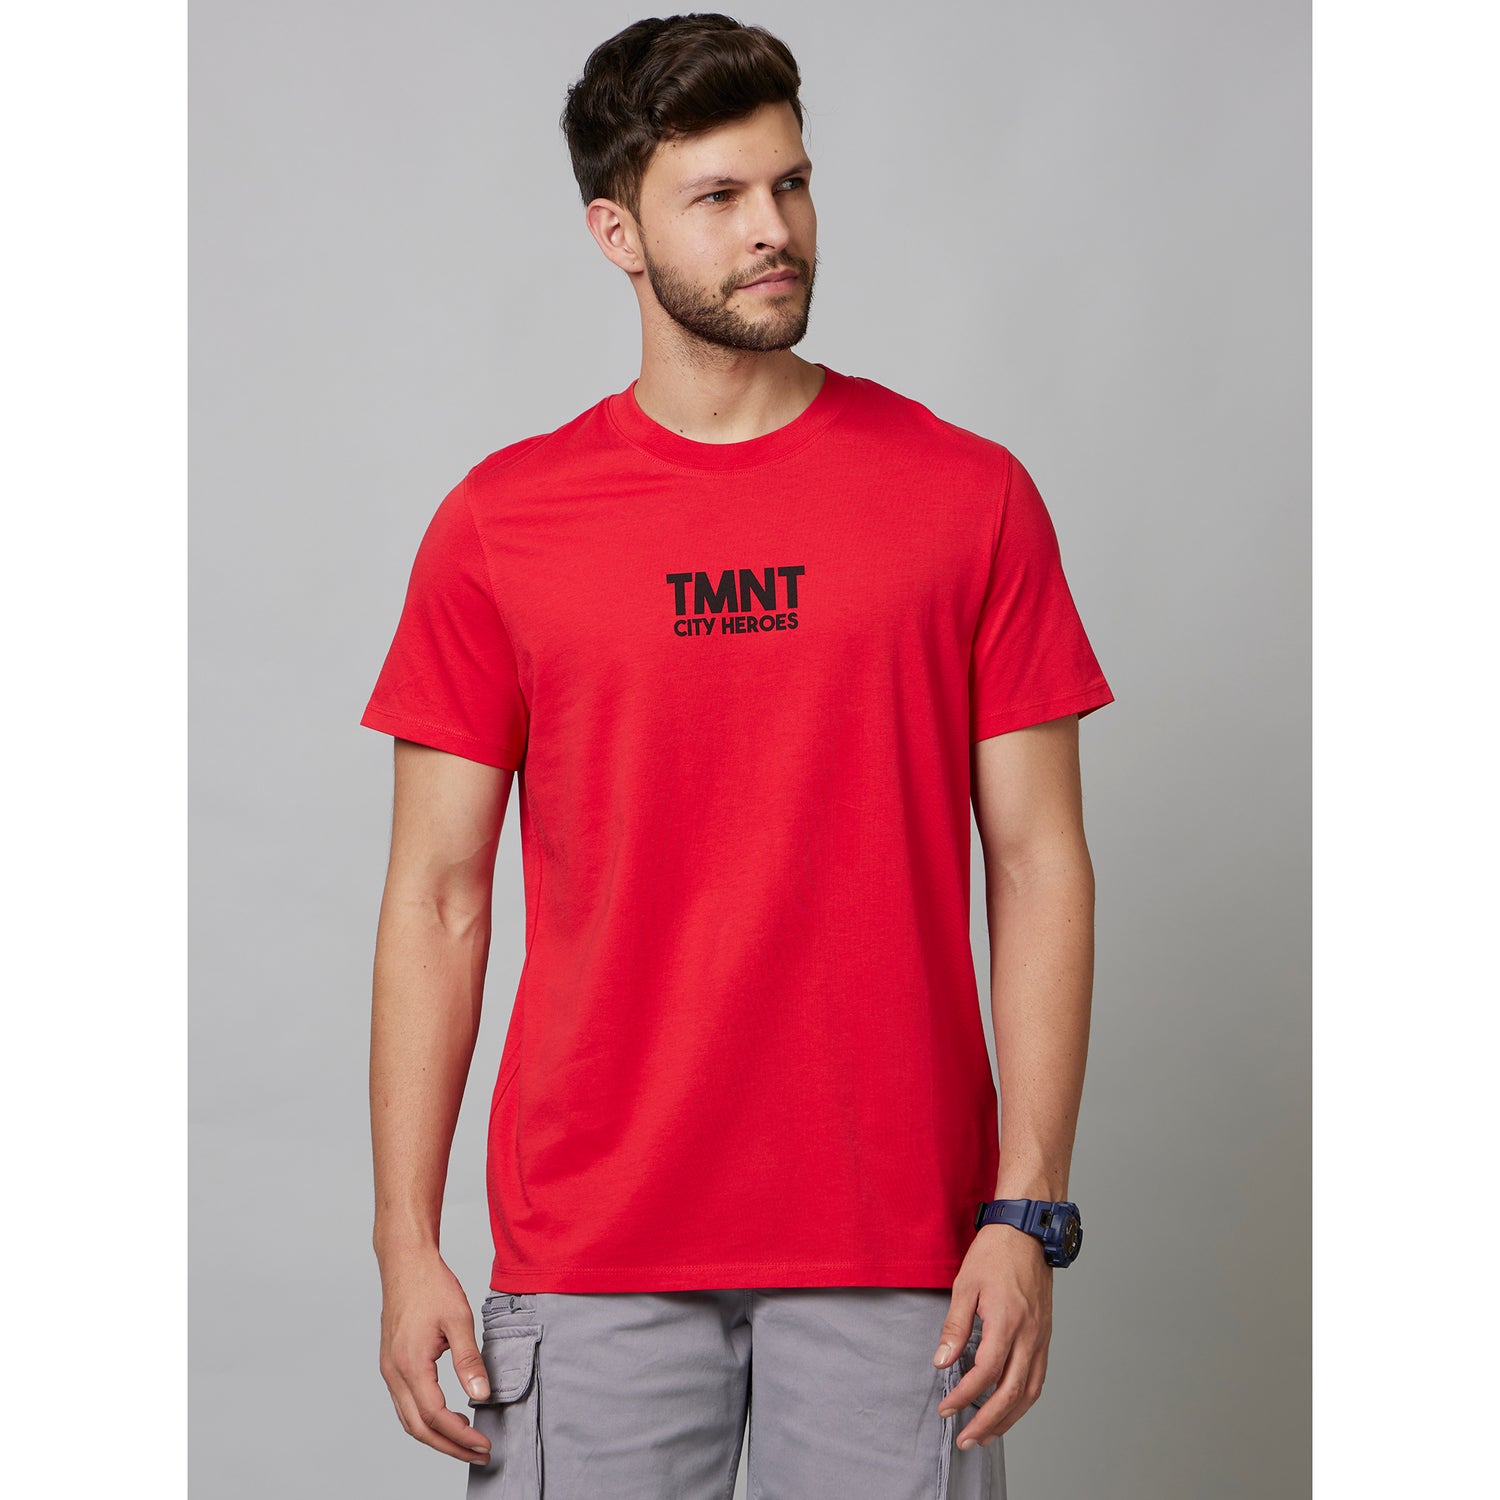 Teenage Mutant Ninja Turtle - Letter Red Short Sleeve Cotton T-Shirts (LDETURTLE)